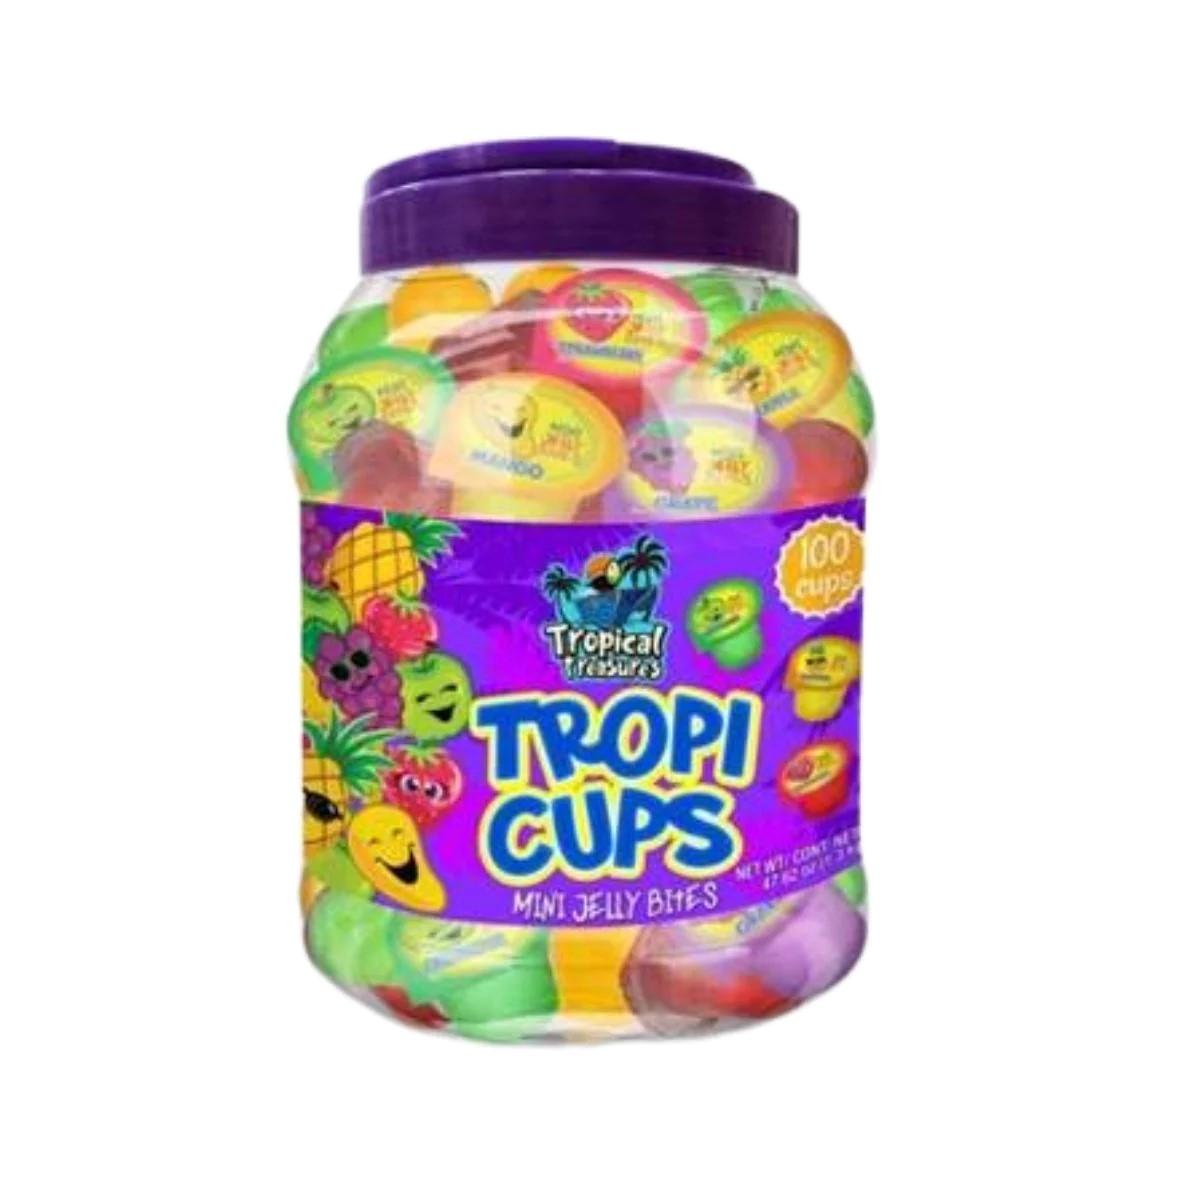 Tropical Treasures Tropi Cups gyümölcs ízű zselé (100db)